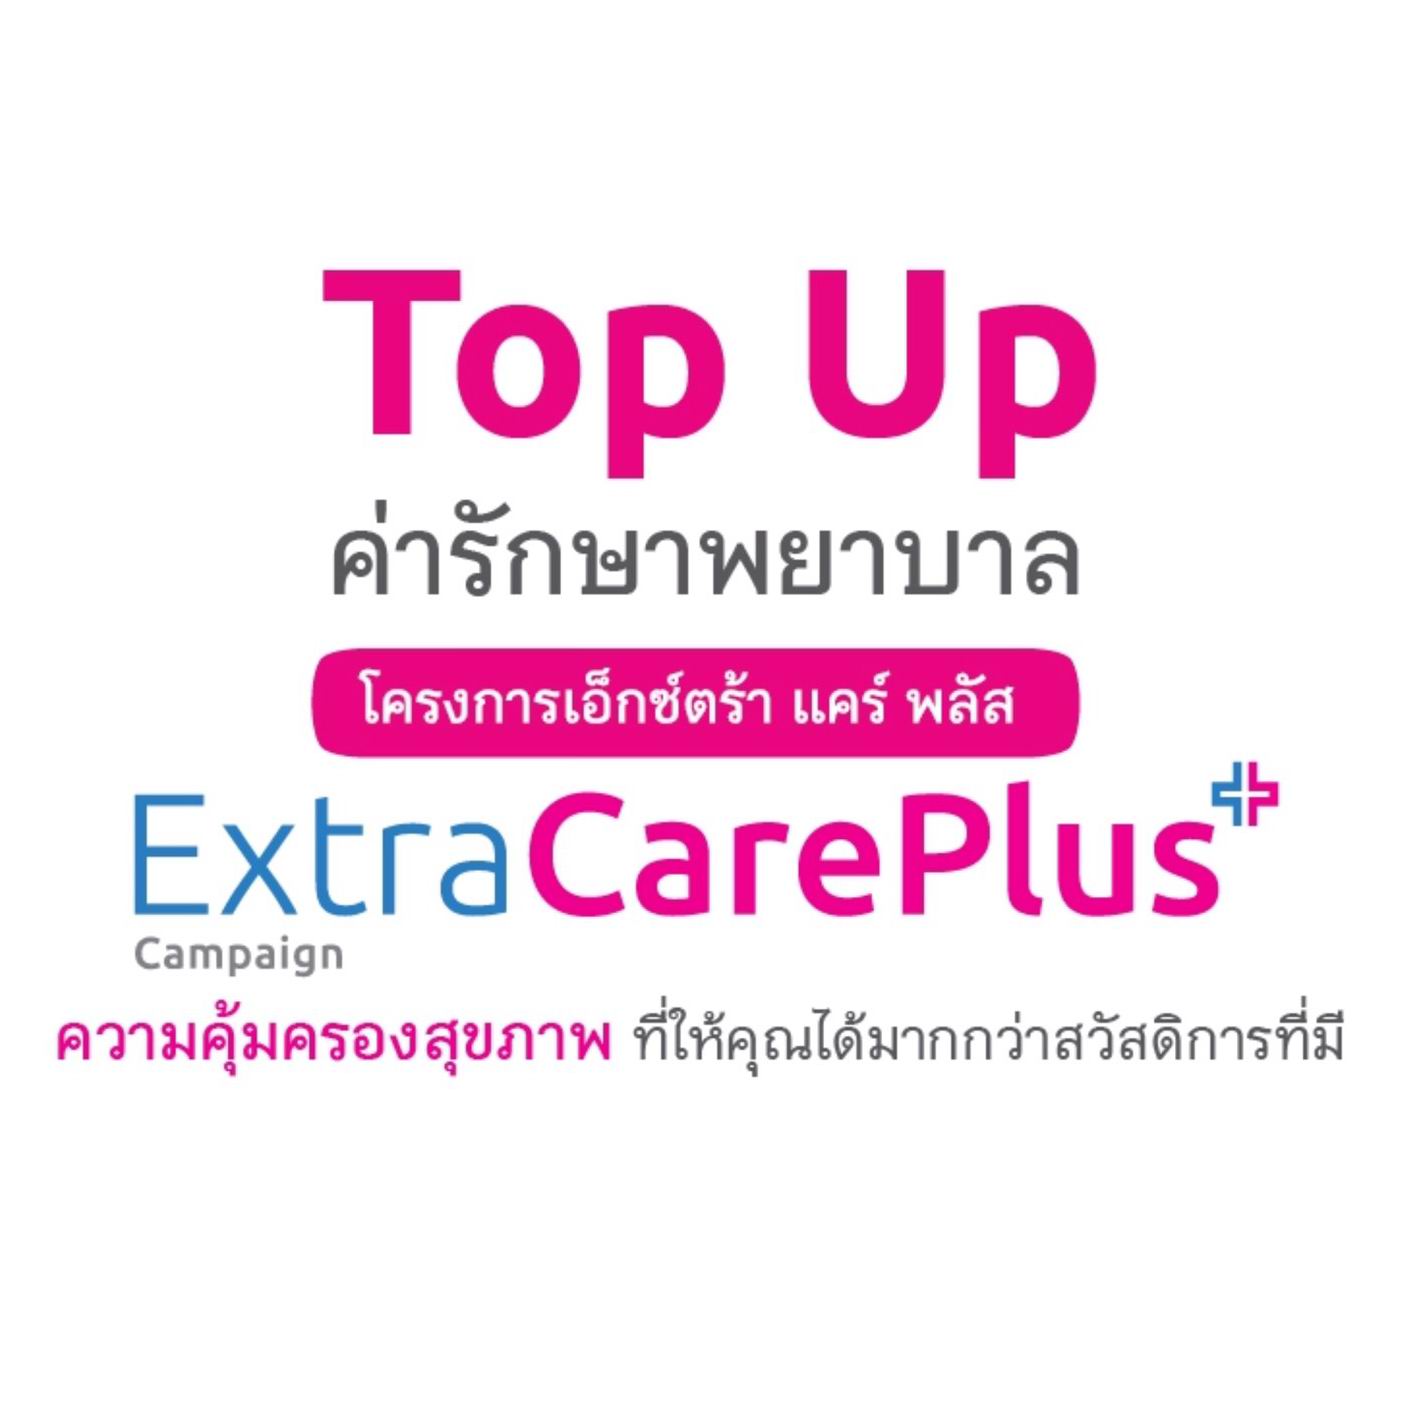 Top Up สวัสดิการ Extra Care Plus สำหรับผู้ที่มีสวัสดิการอื่นอยู่แล้ว เริ่มต้น 539 บาทต่อเดือน